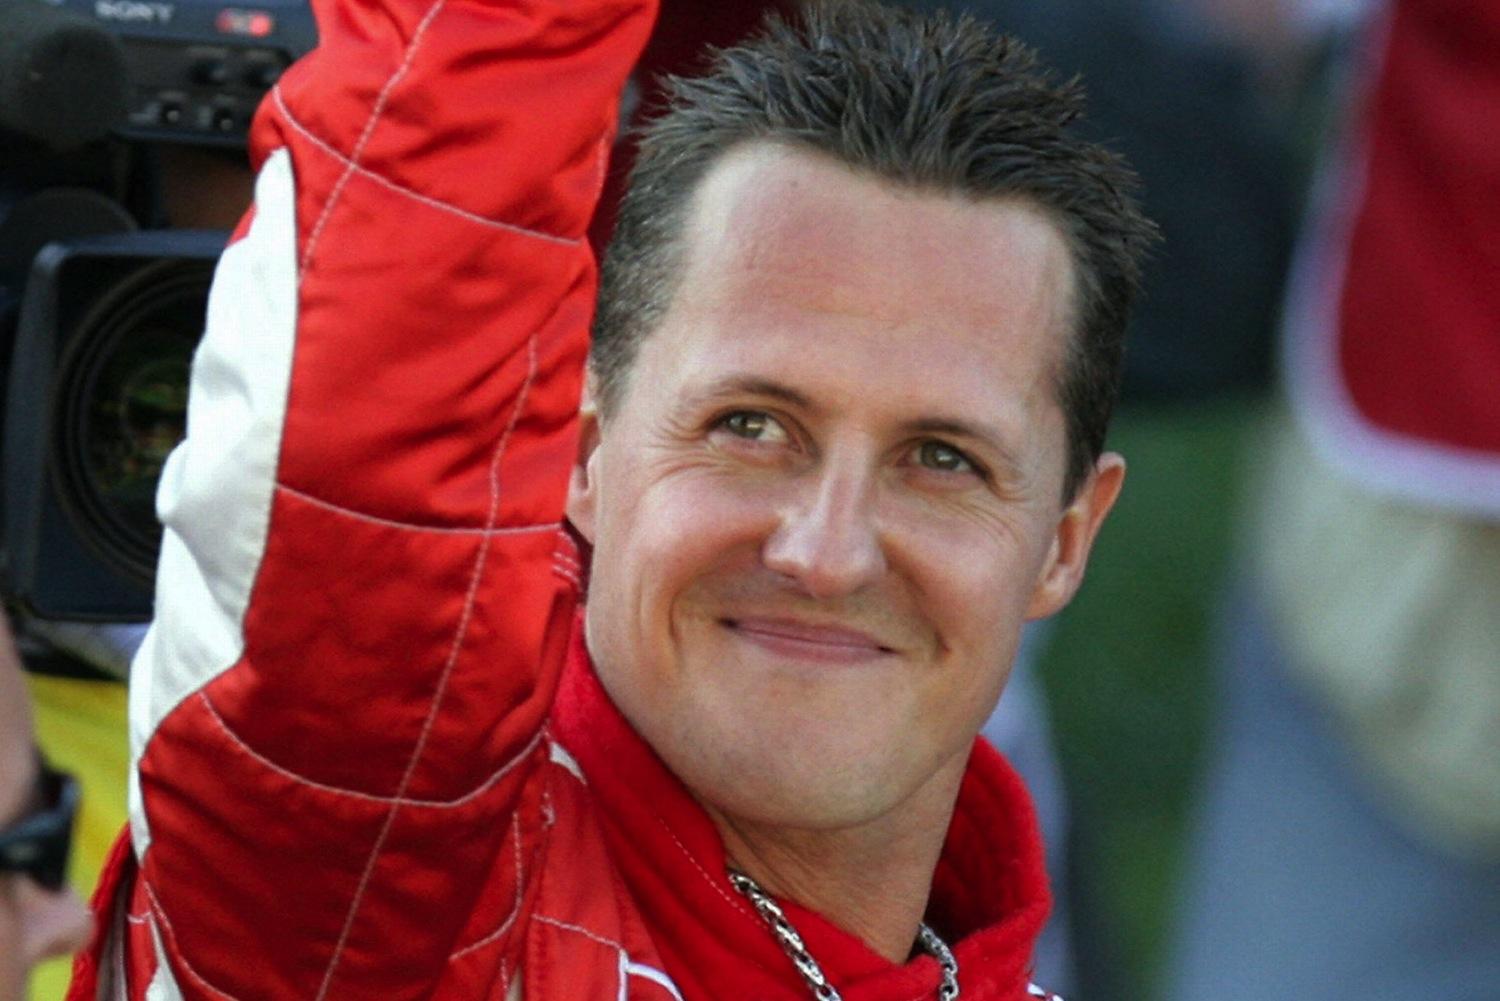 La moglie di Michael Schumacher mette all’asta la collezione di orologi del marito che vale una fortuna